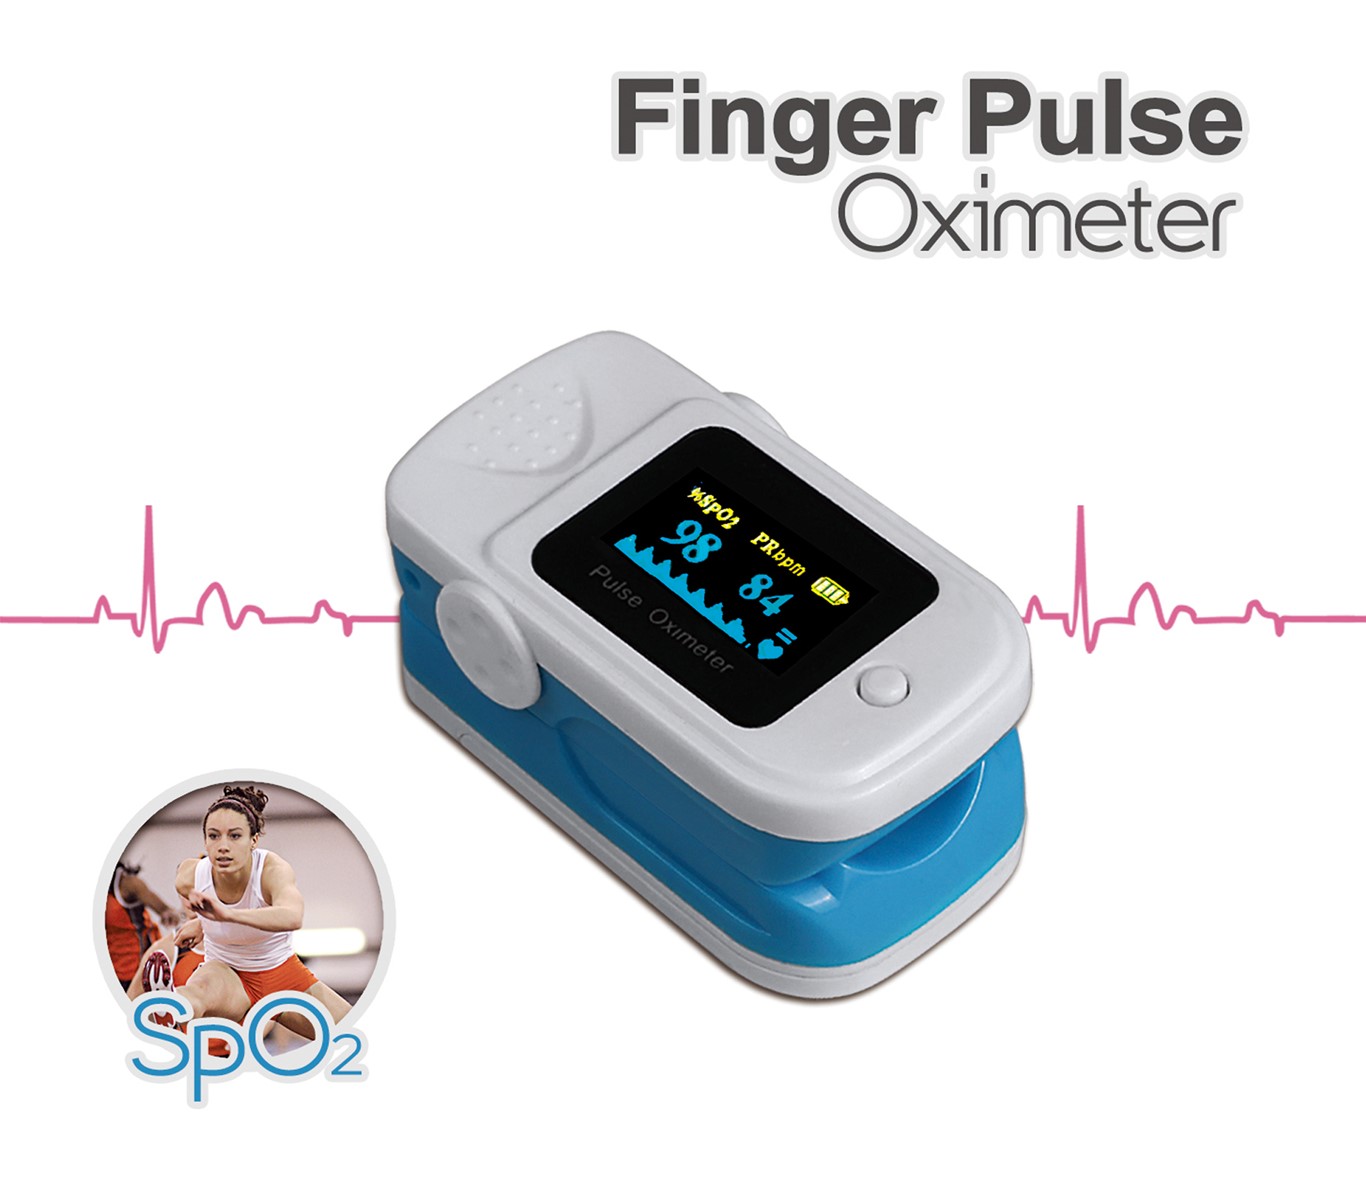 Advanced Pulse oximeter/Pulse oximeter price